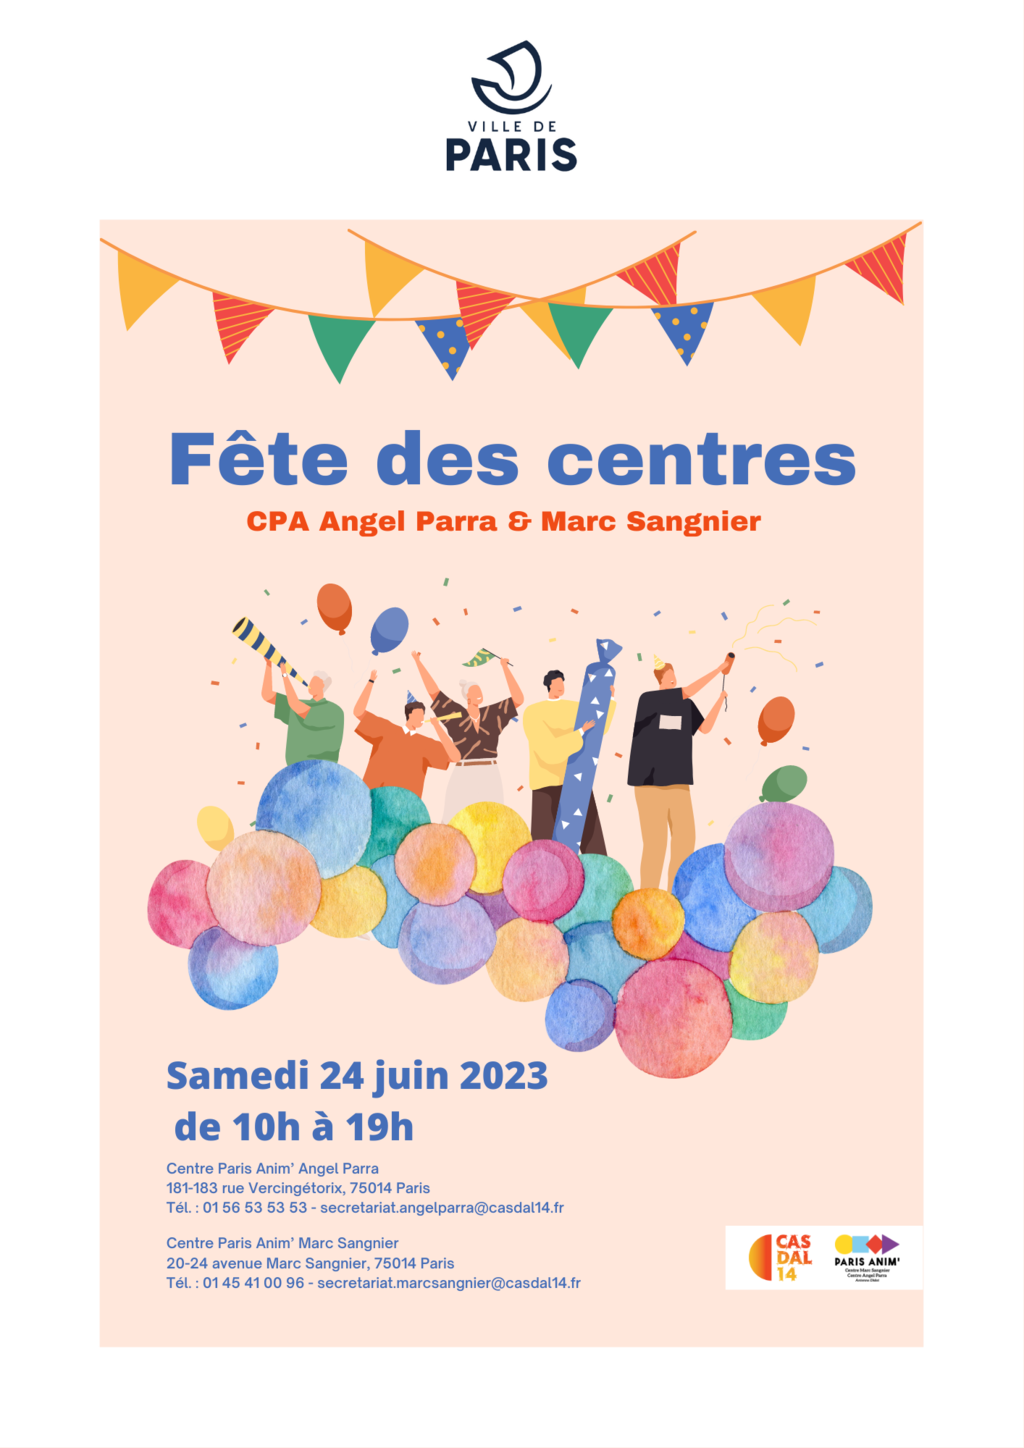 Fêtes des centres Paris Anim' Angel Parra & Marc Sangnier